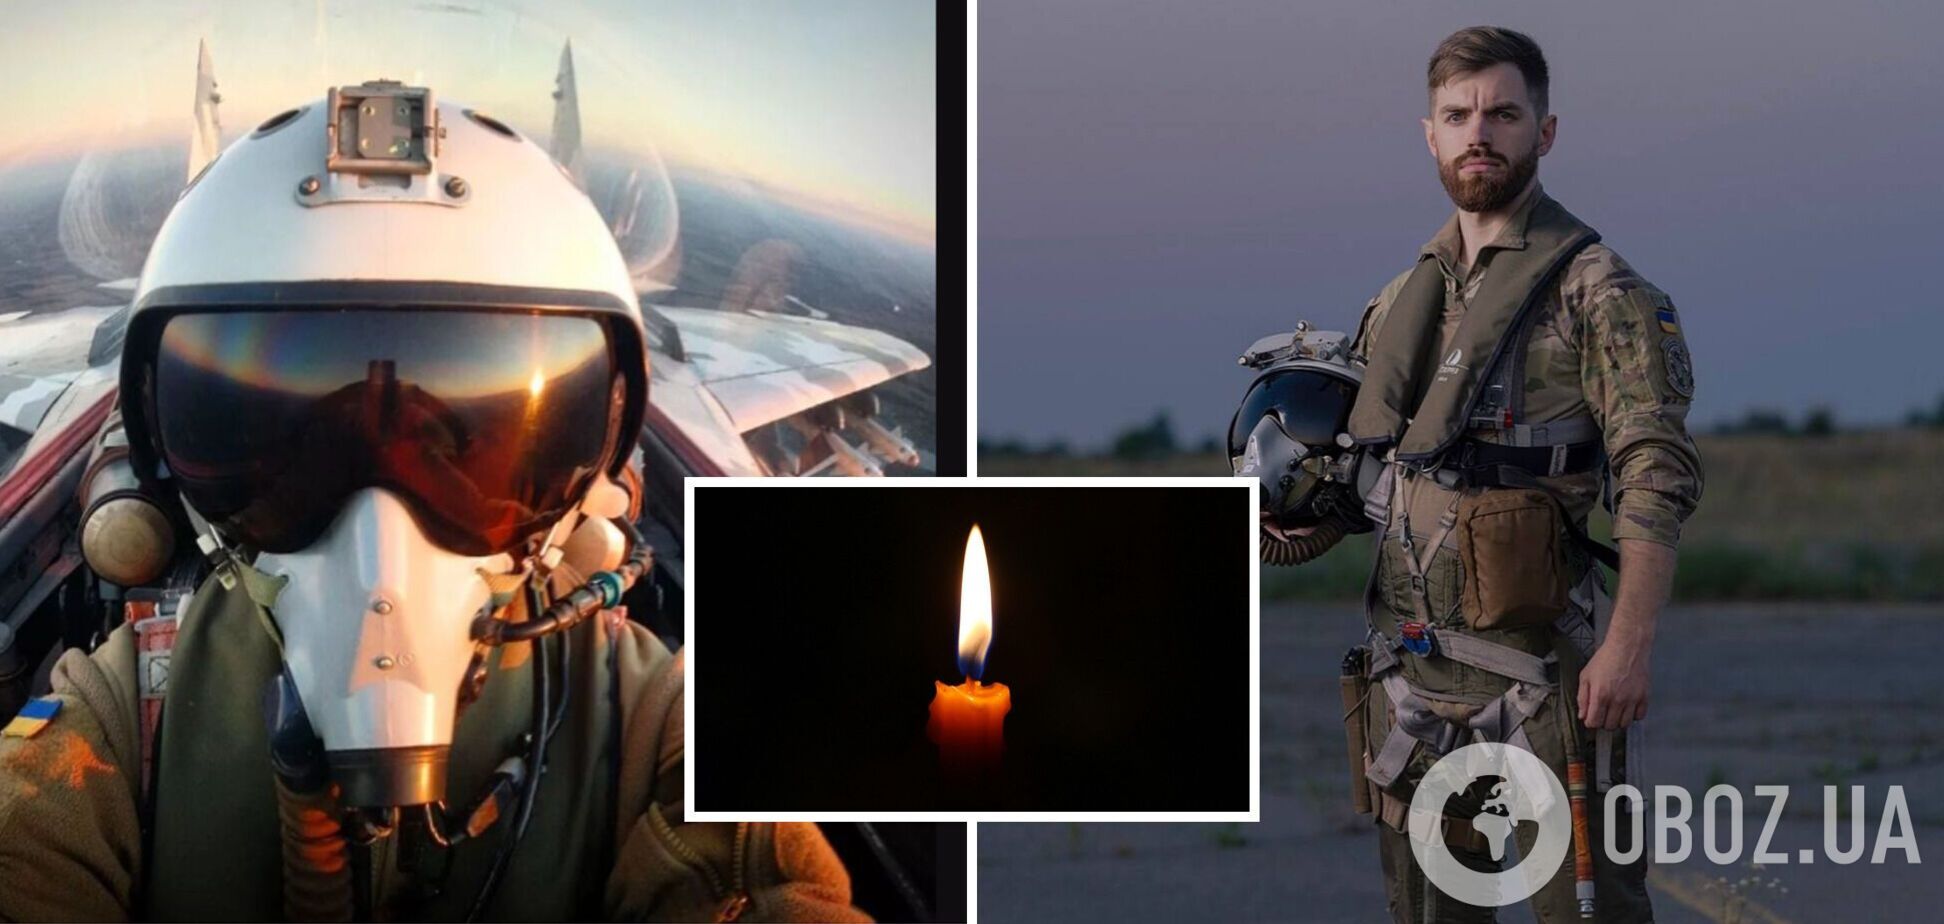 Мечтал про F-16: в авиакатастрофе в Житомирской области погиб известный украинский пилот 'Джус' и еще два летчика. Фото